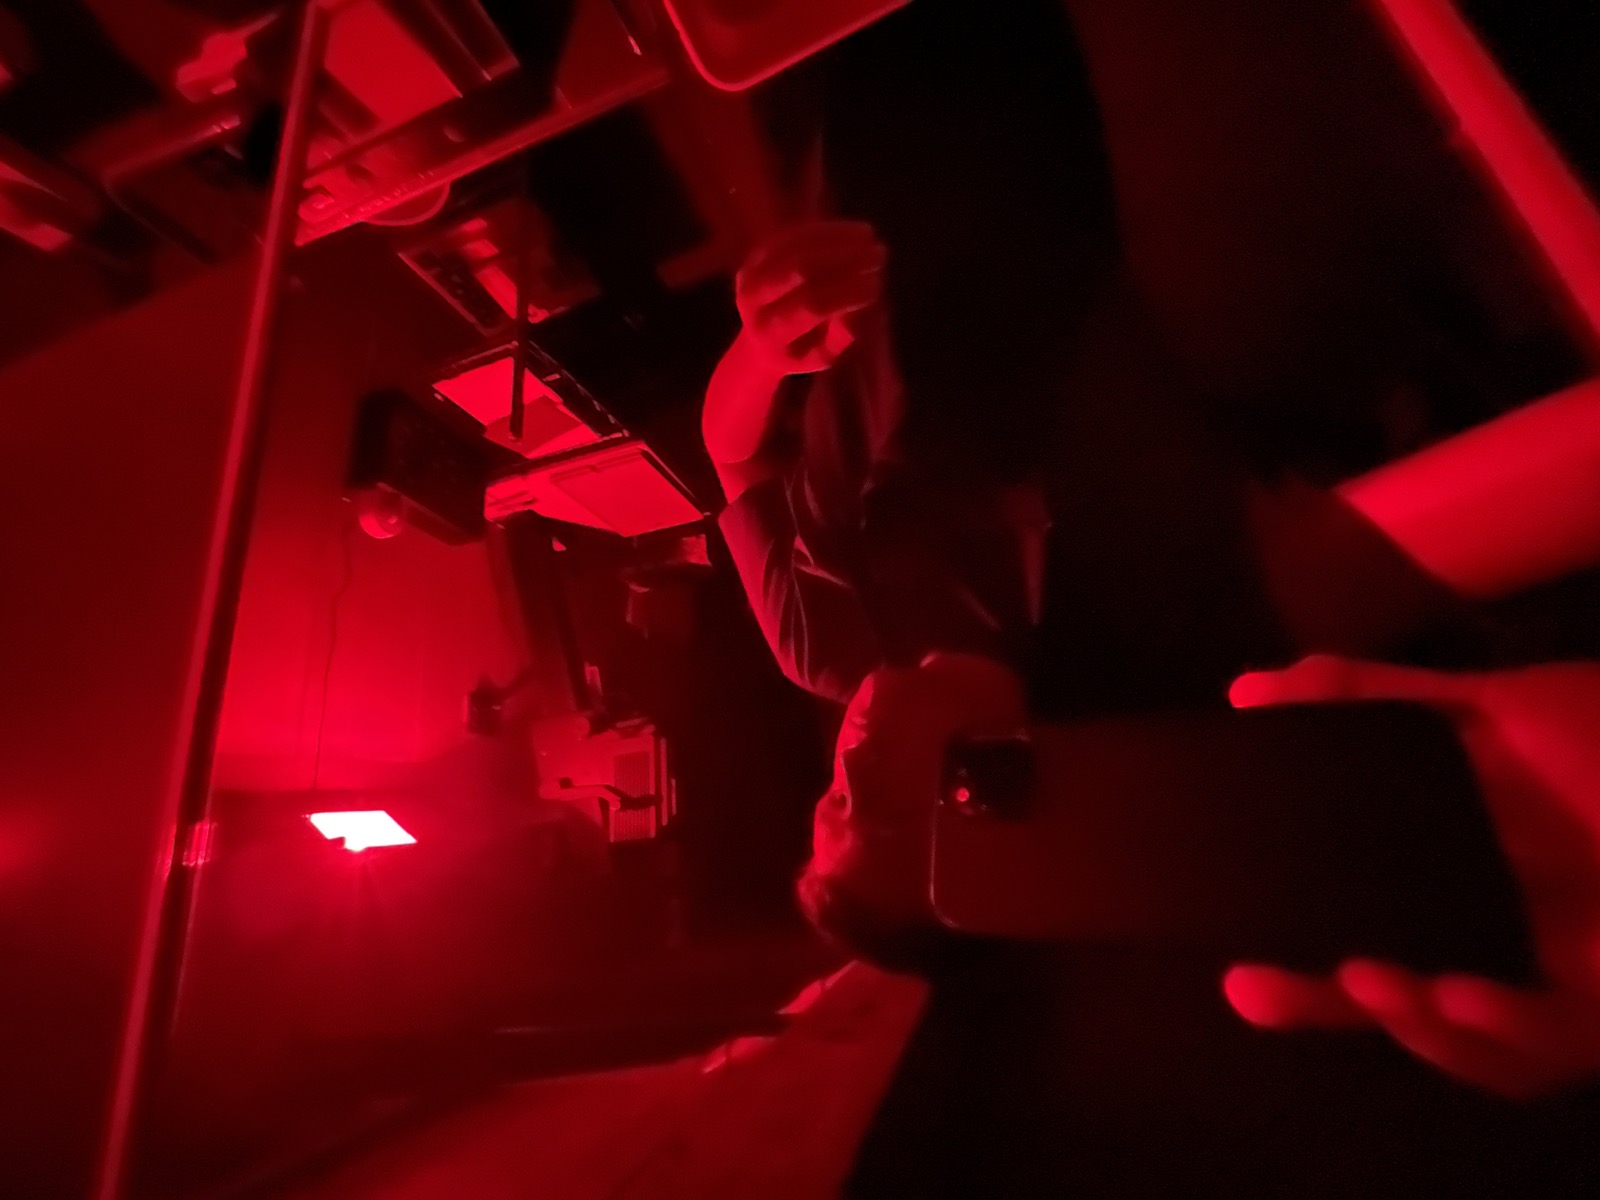 Selfie in the darkroom